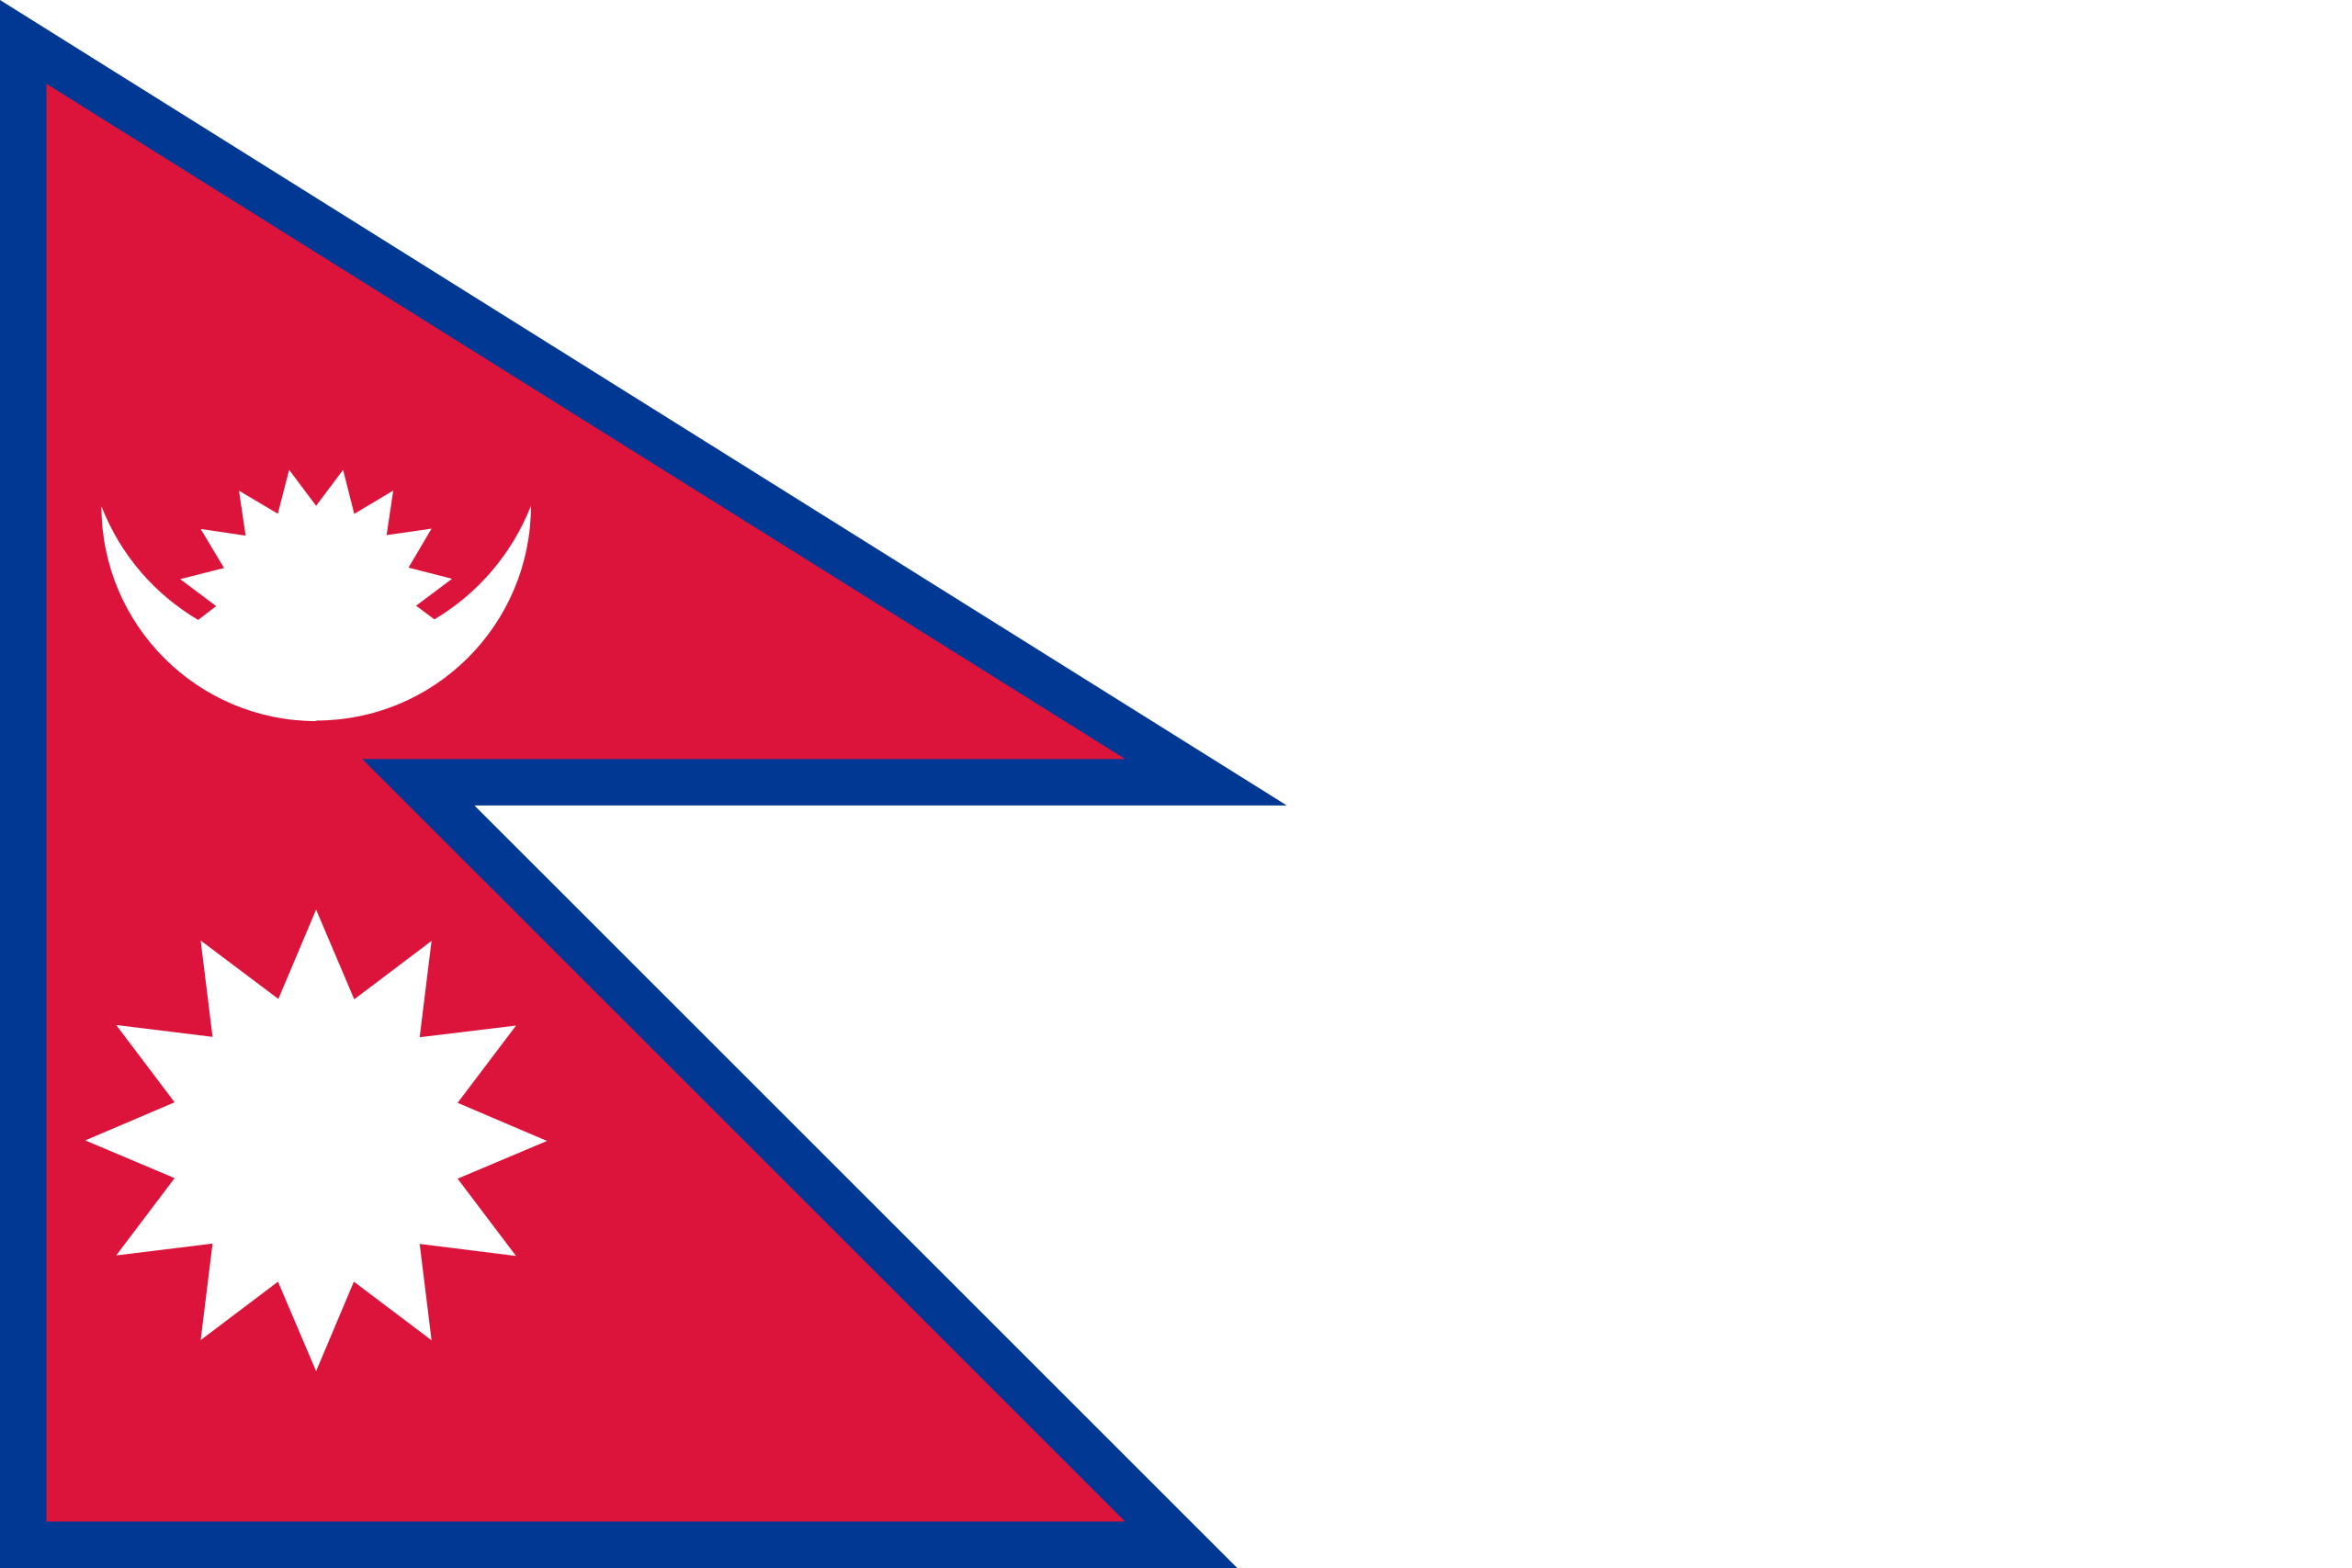 Cờ Nepal trên nền trắng 2x2: Hãy chiêm ngưỡng bức ảnh vô cùng độc đáo với cờ Nepal đầy màu sắc trên nền trắng tinh khôi. Bức ảnh này sẽ khiến bạn thấy như đang được đưa đến xứ sở Himalaya, khám phá sự đa dạng của văn hóa và truyền thống đặc biệt của Nepal.